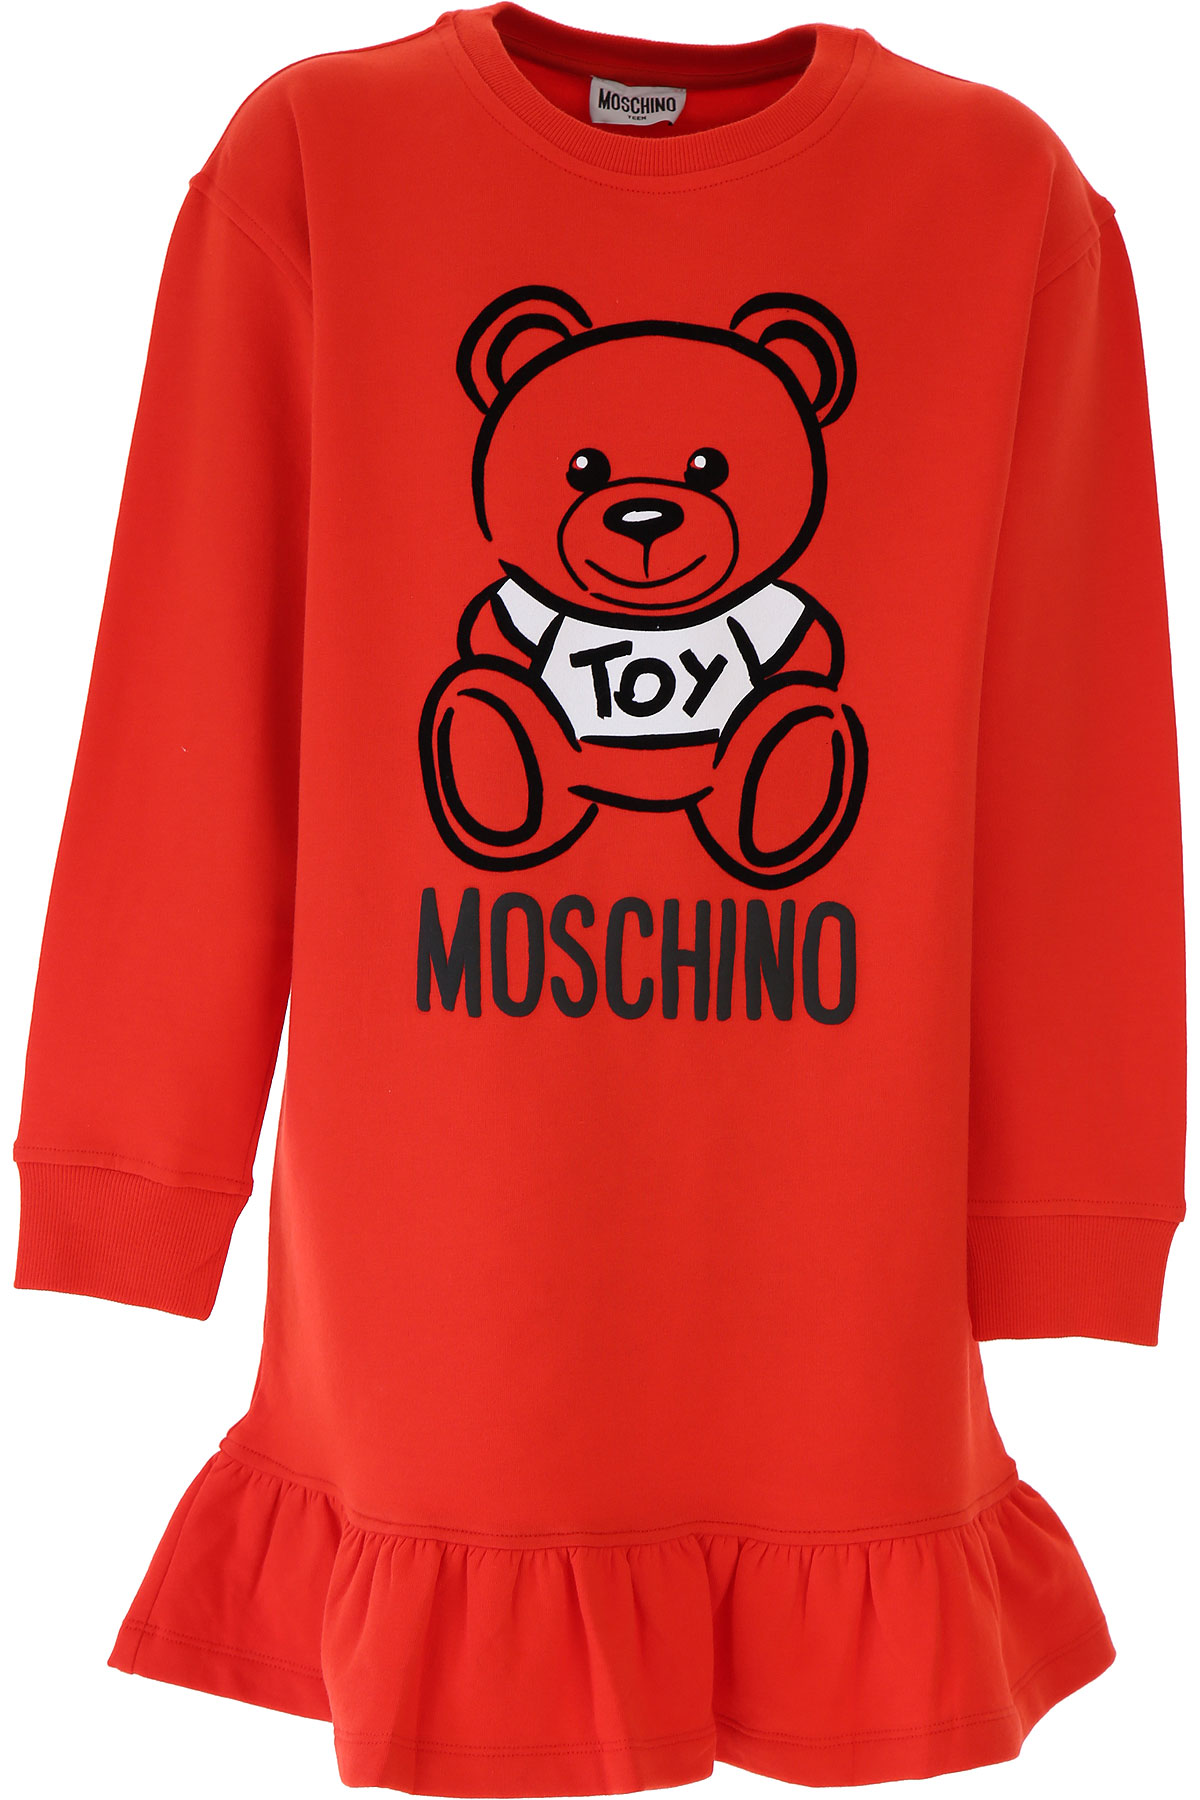 Moschino Kleid für Mädchen Günstig im Sale, Rot, Baumwolle, 2017, 12Y 14Y 6Y